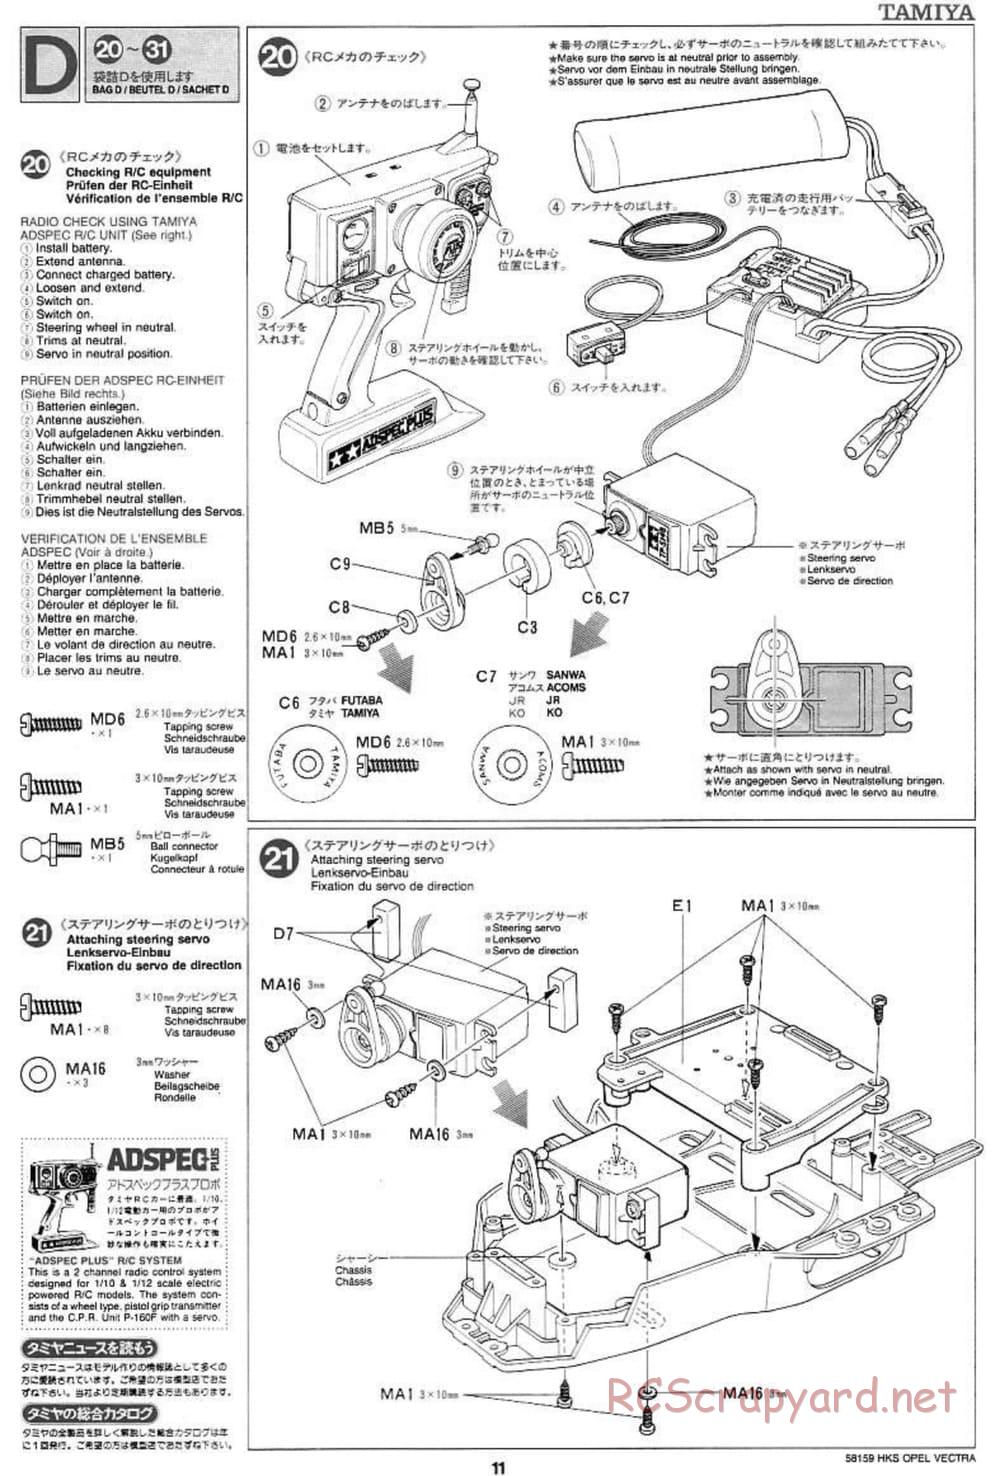 Tamiya - HKS Opel Vectra JTCC - FF-01 Chassis - Manual - Page 11